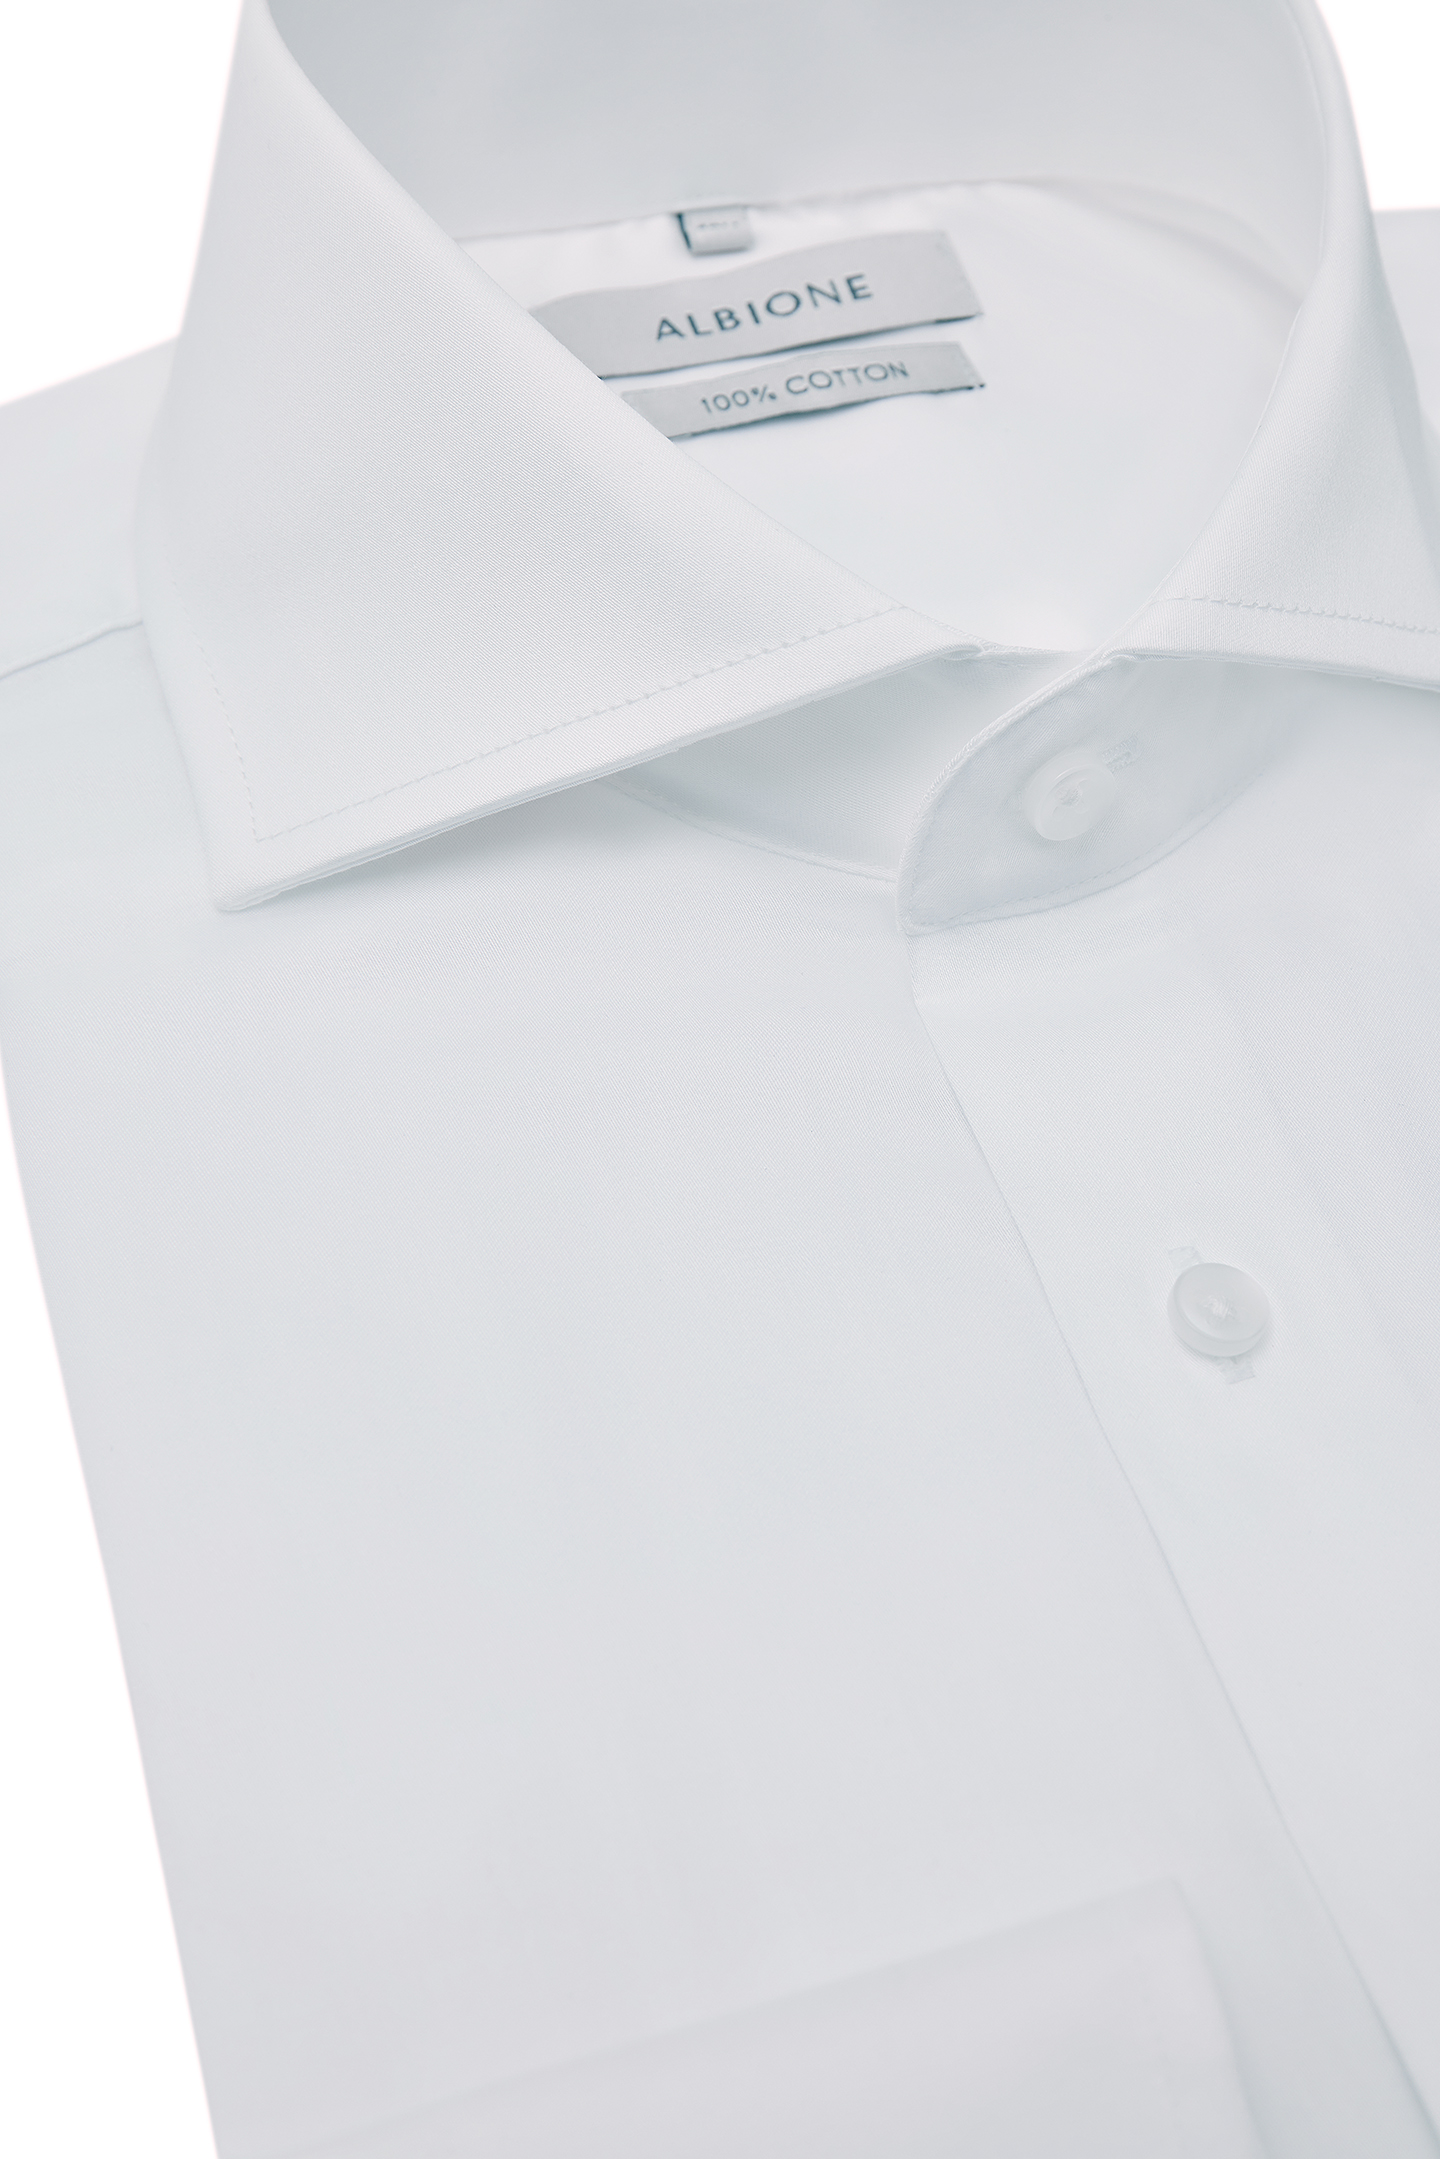 Сорочка Albione 591Sa, цвет белый, размер 46 - фото 1